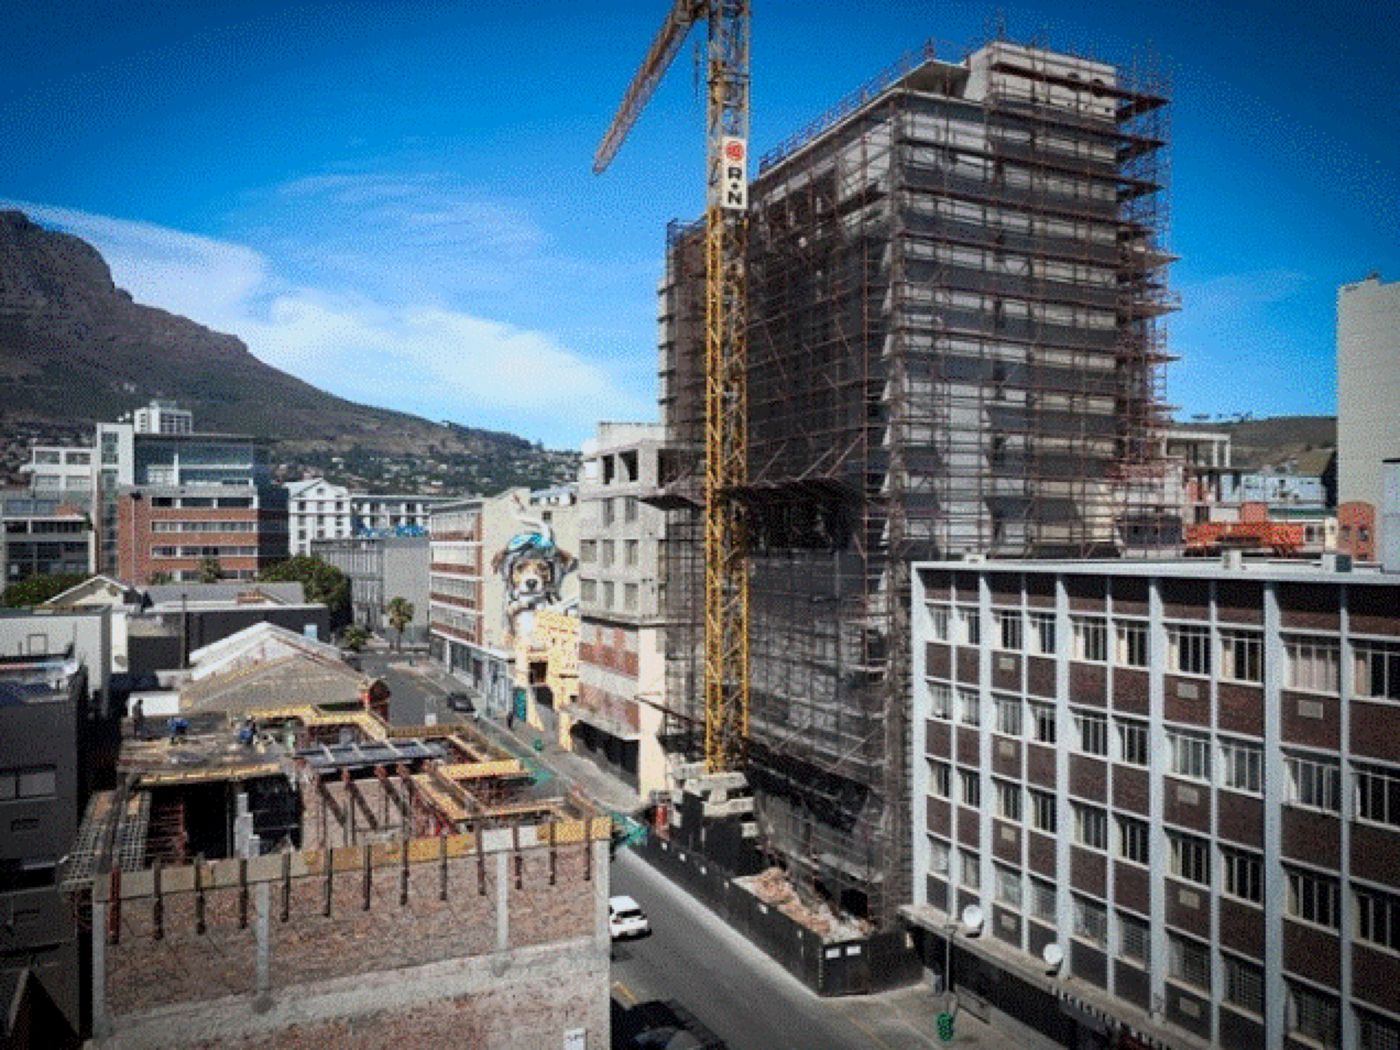 Ciudățeniile lumii. Cape Town din Africa de Sud găzduiește cea mai înaltă clădire de cânepă din lume. Cât a costat construcția hotelului